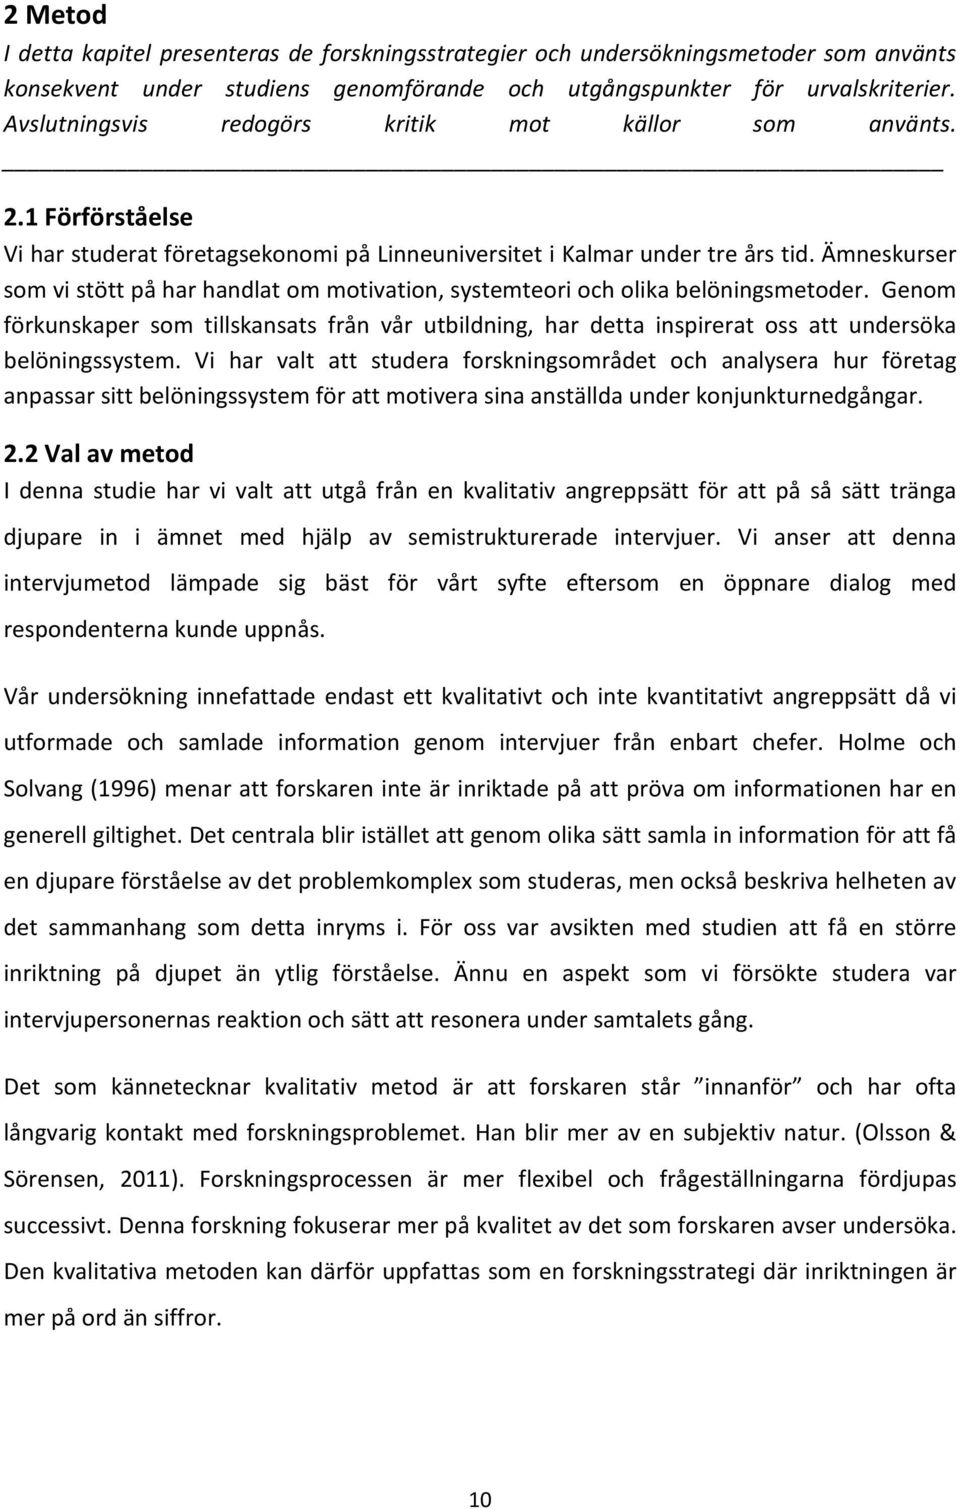 Anpassning av belöningssystem under konjunkturnedgångar - PDF ...